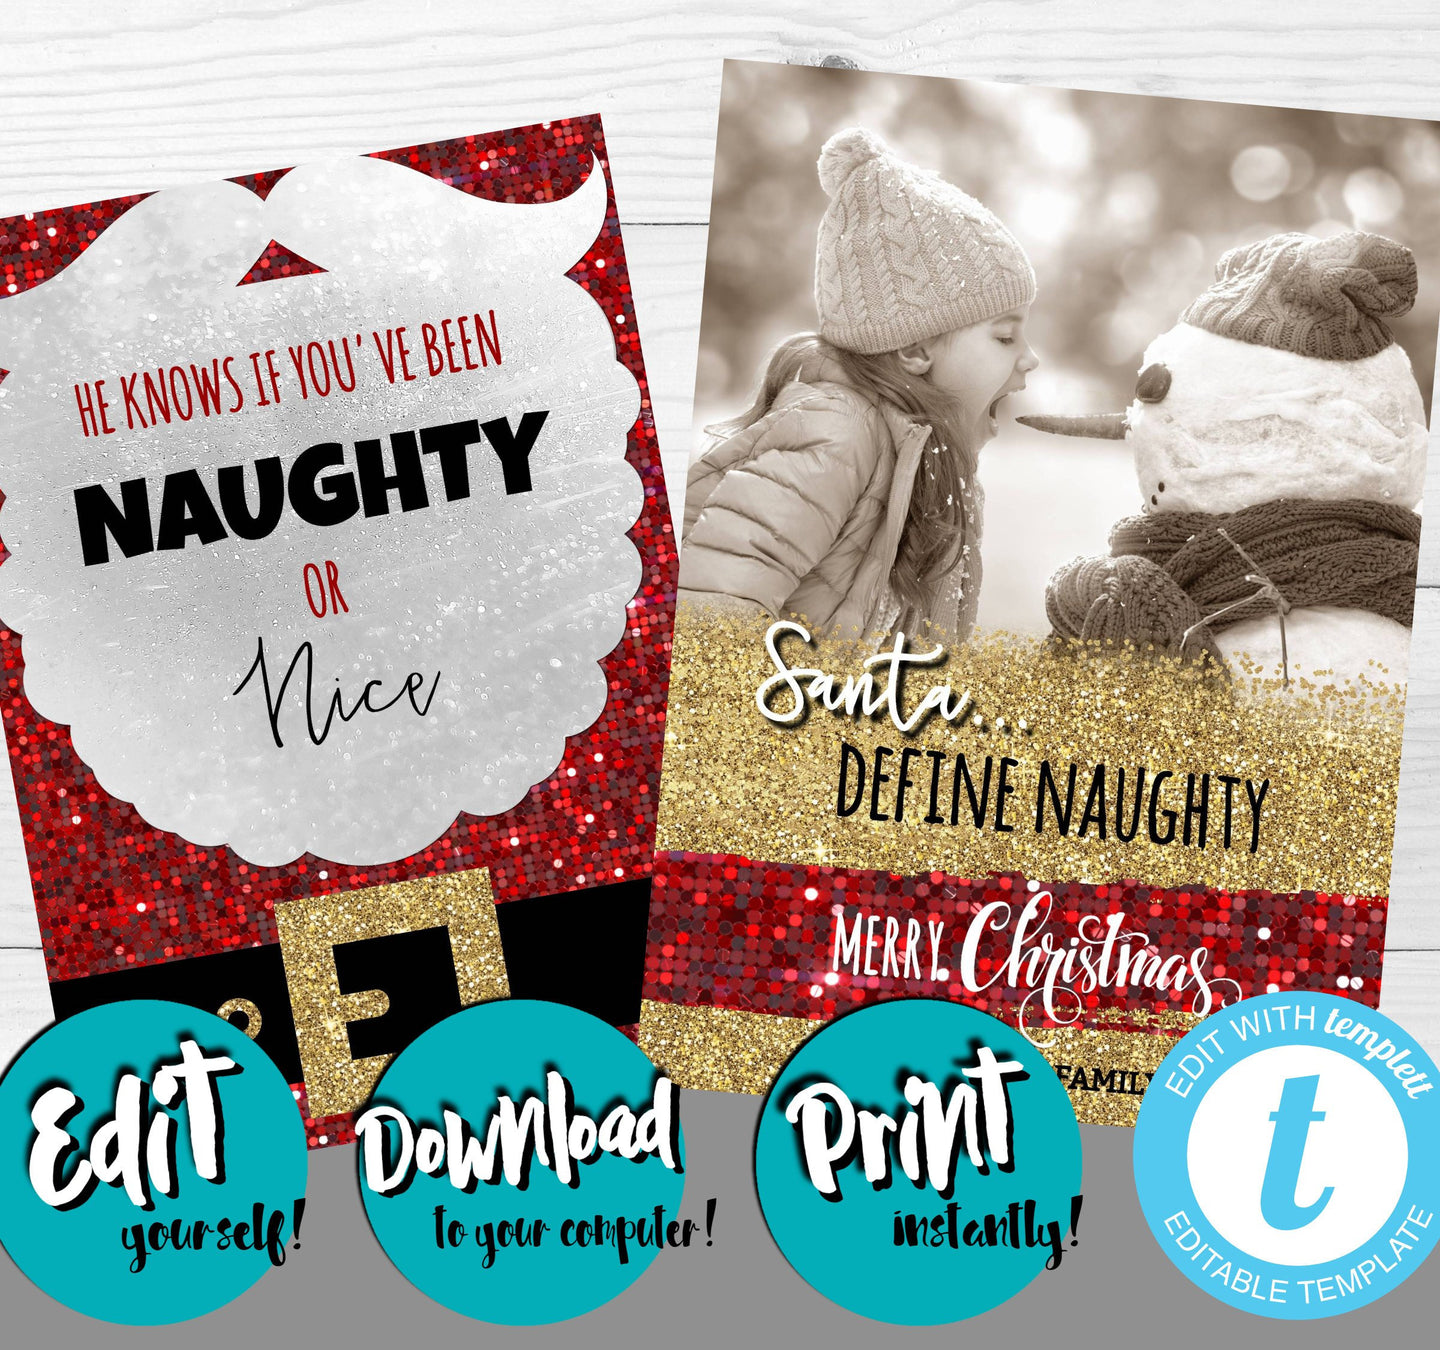 Naughty or Nice Christmas Card, Photo Christmas Card, Glitter, Santa Define naughty, Merry Christmas, Holiday, Christmas , Editable Xmas